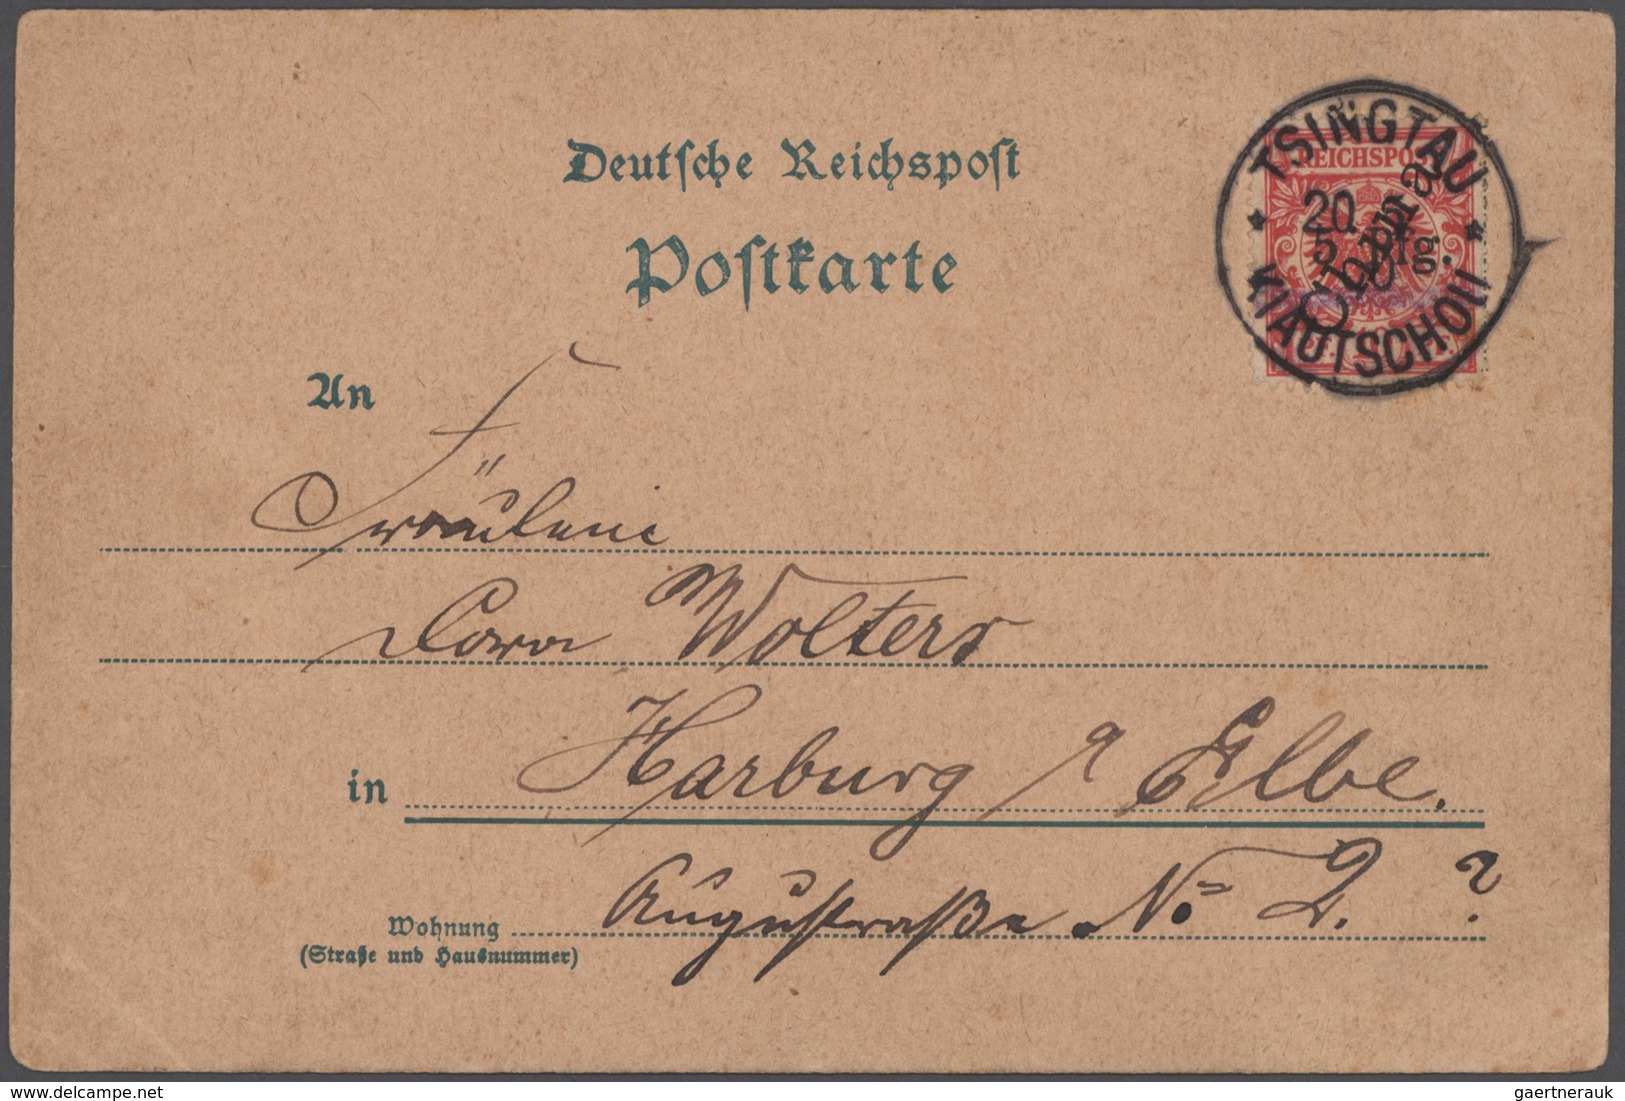 Deutsche Kolonien: 1890-1920, Posten mit Marken auf Steckseiten, dabei auch etliche Höchstwerte, daz